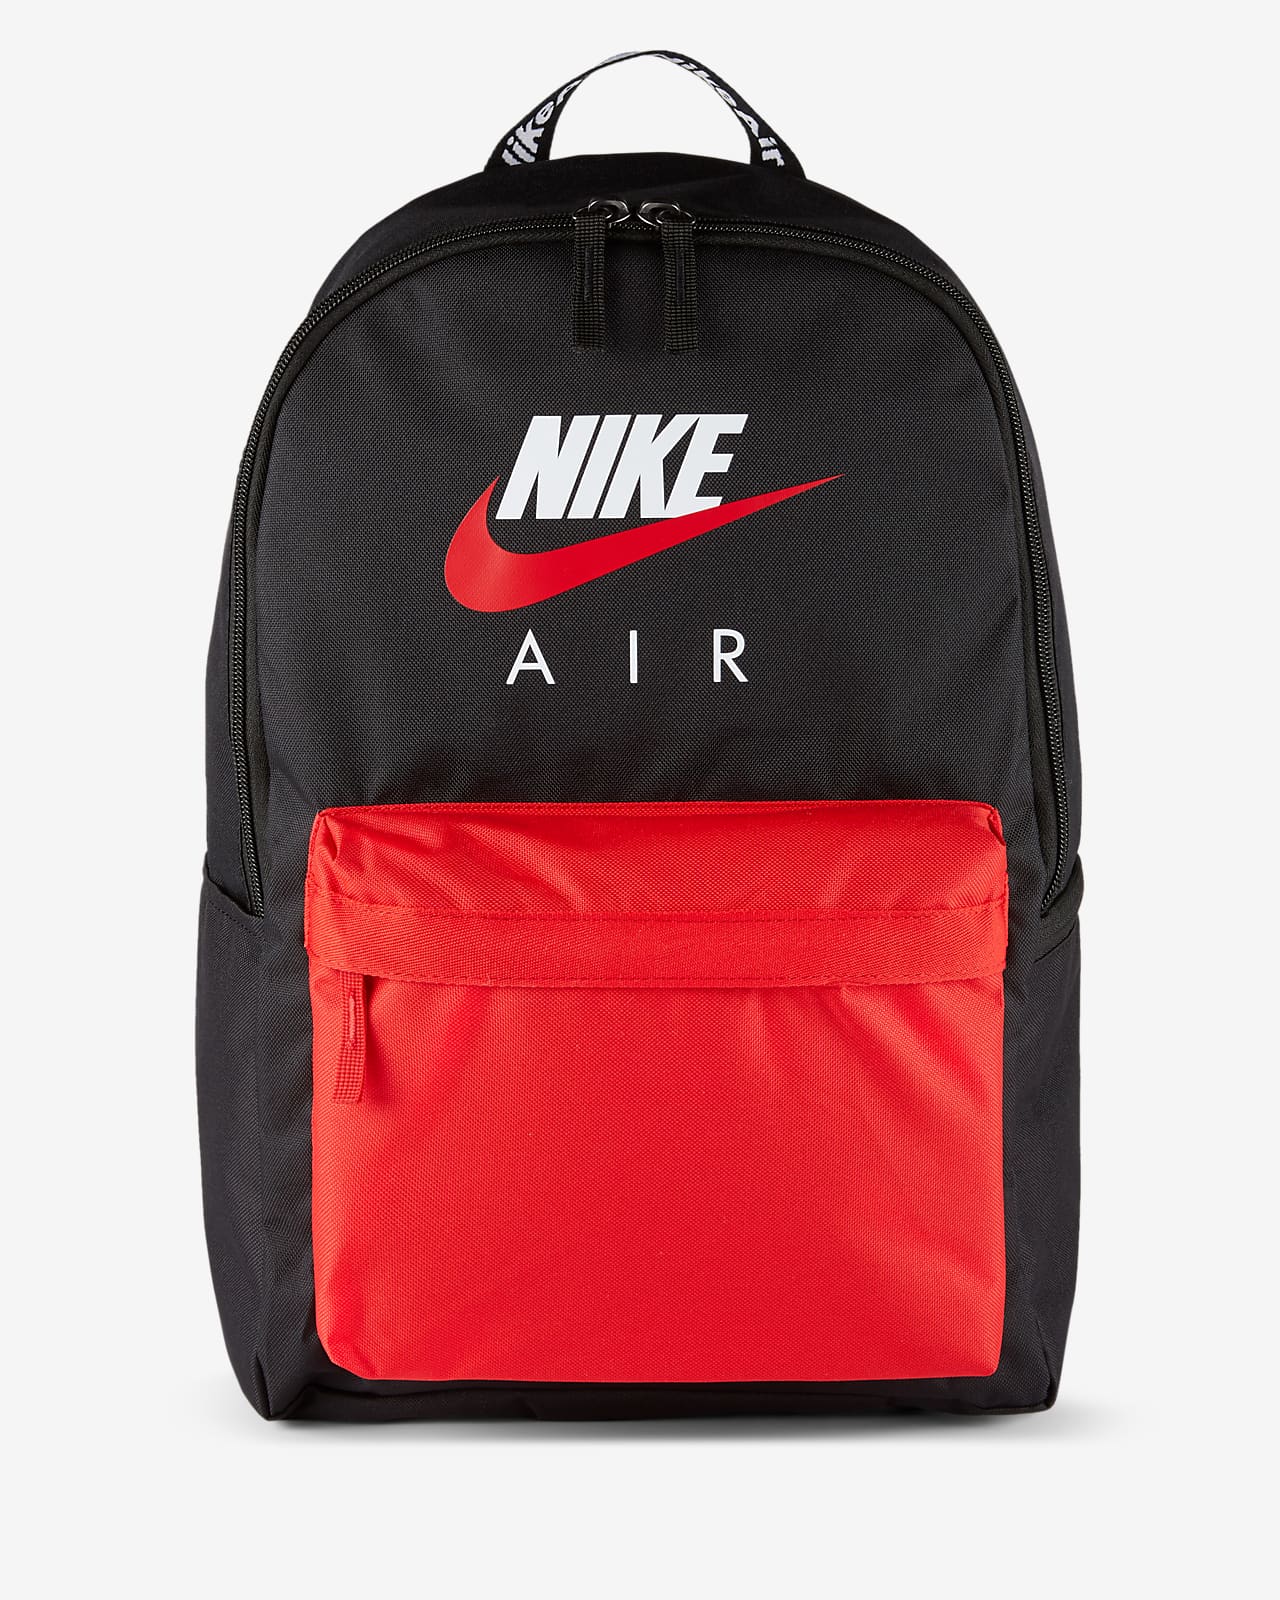 nike air backpack white